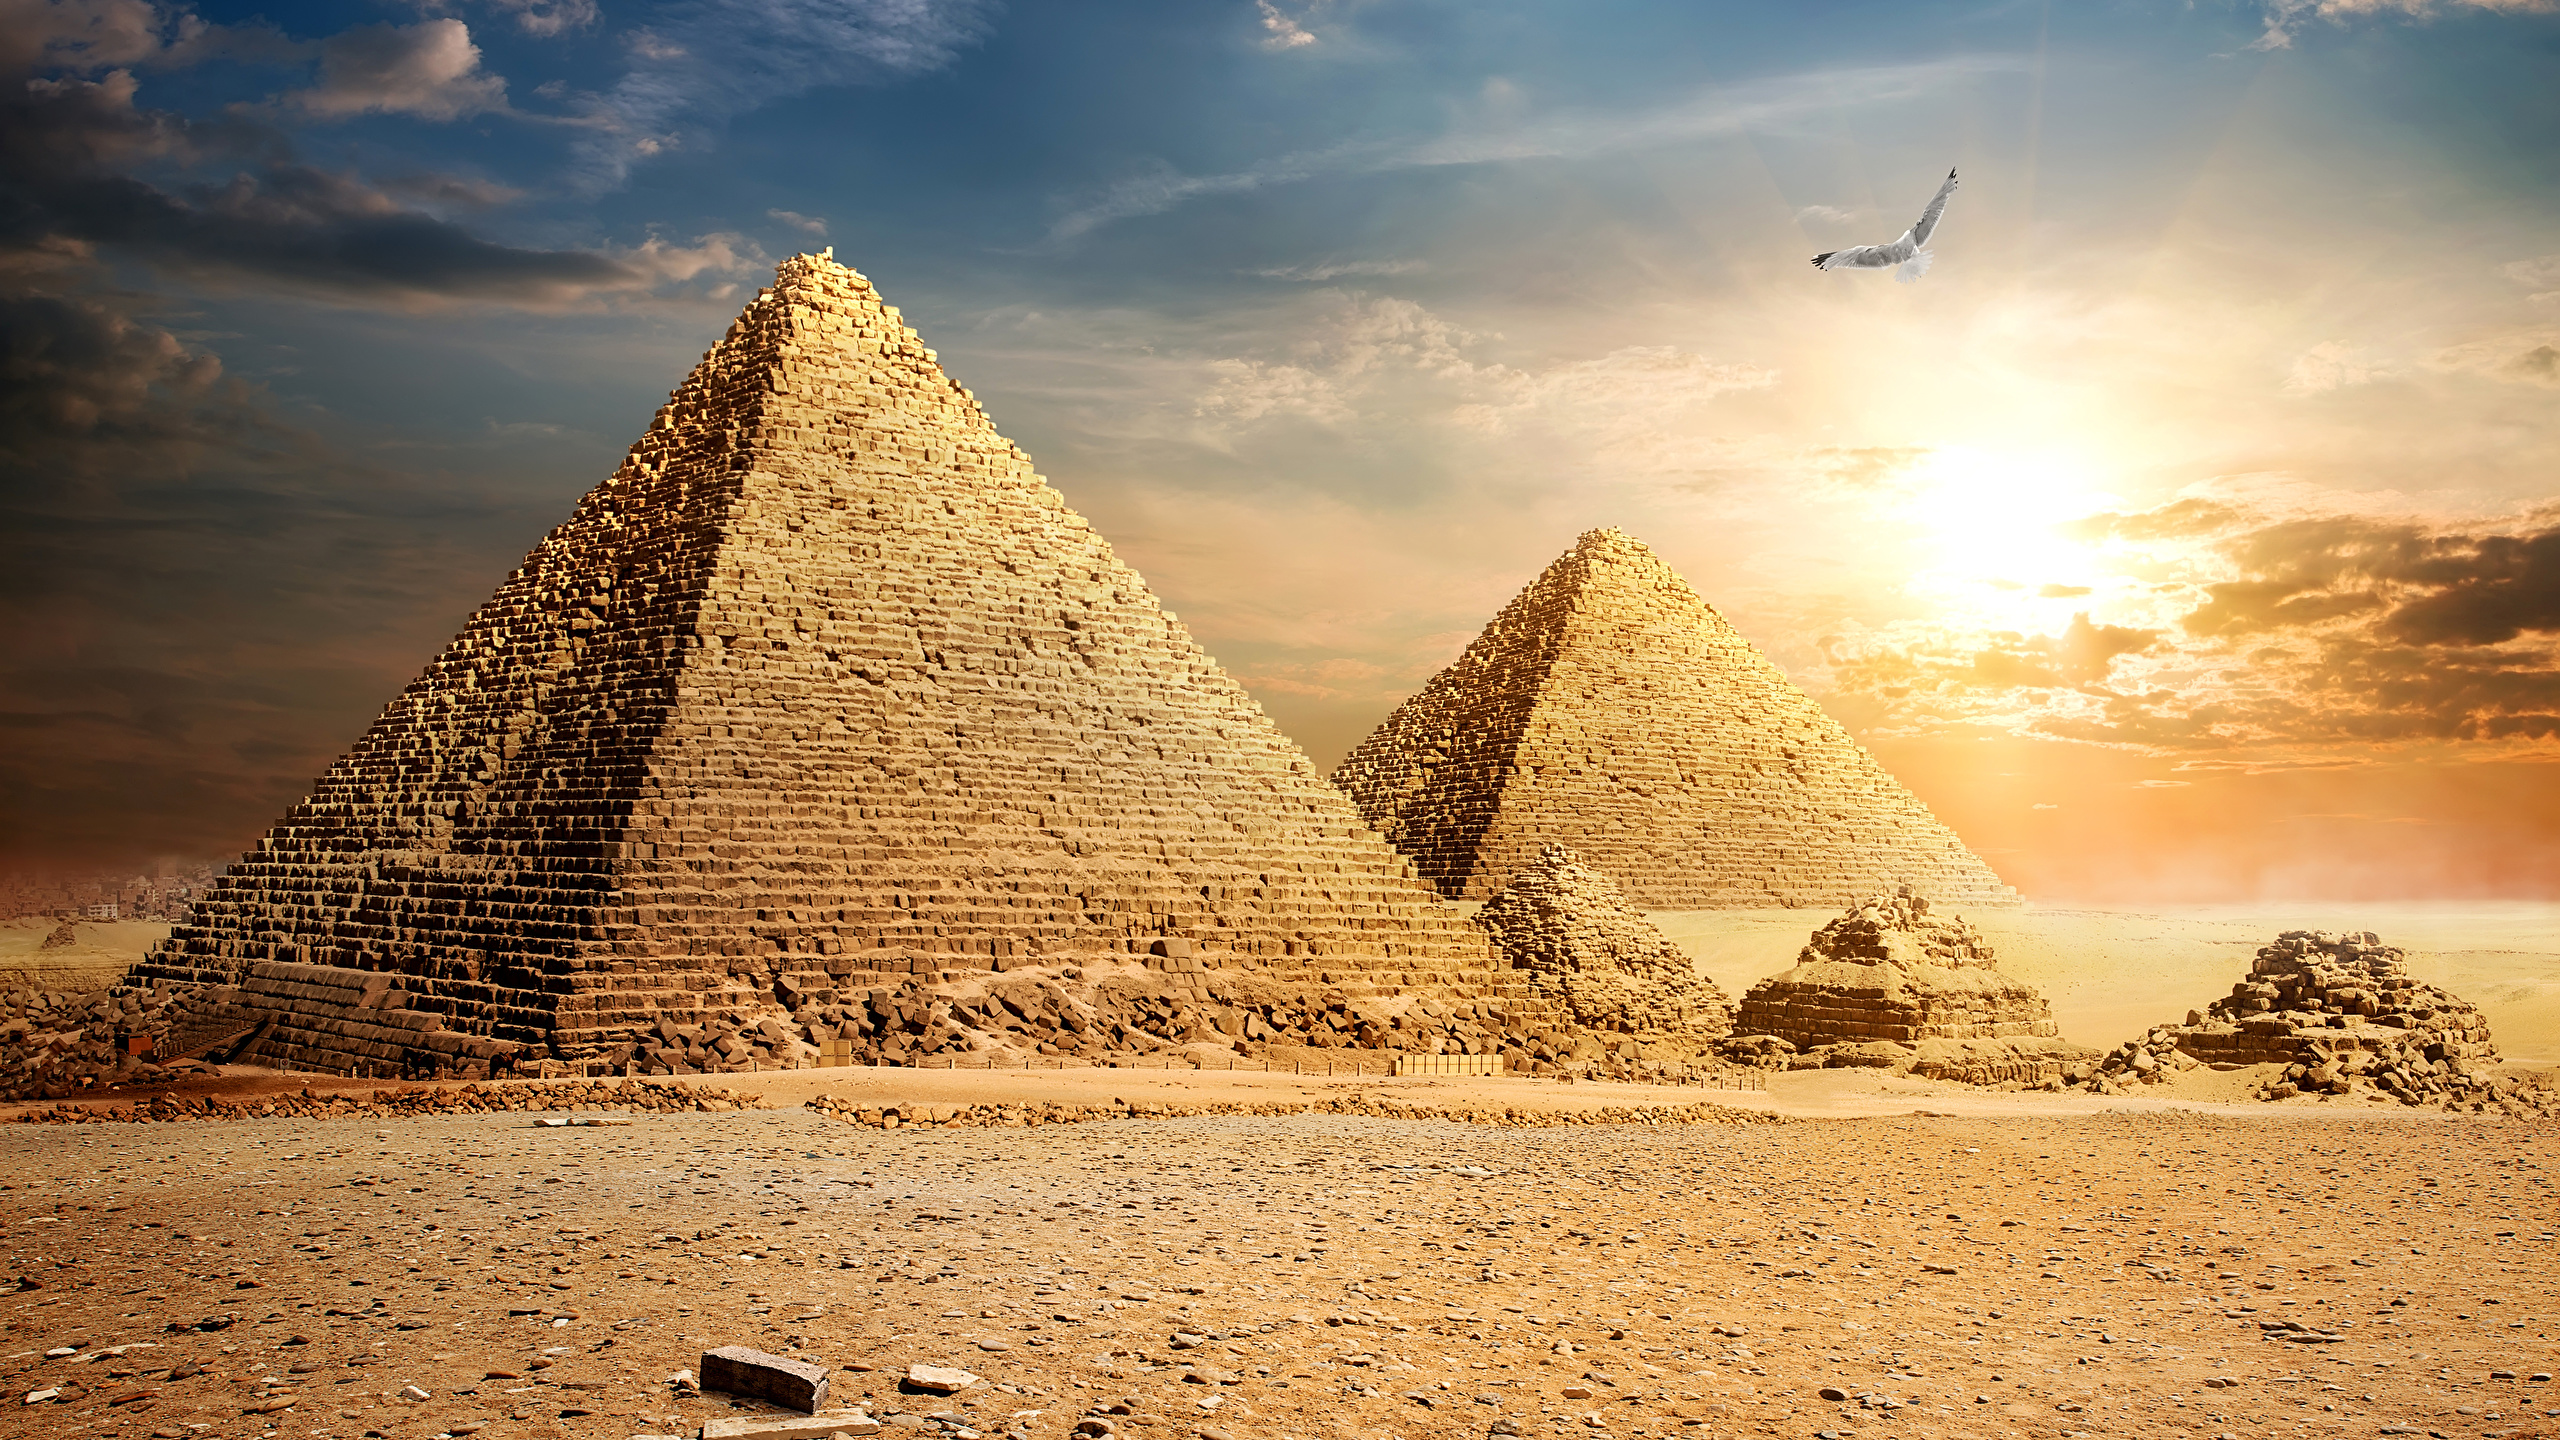 壁紙 2560x1440 エジプト 砂漠 空 Cairo ピラミッド 雲 自然